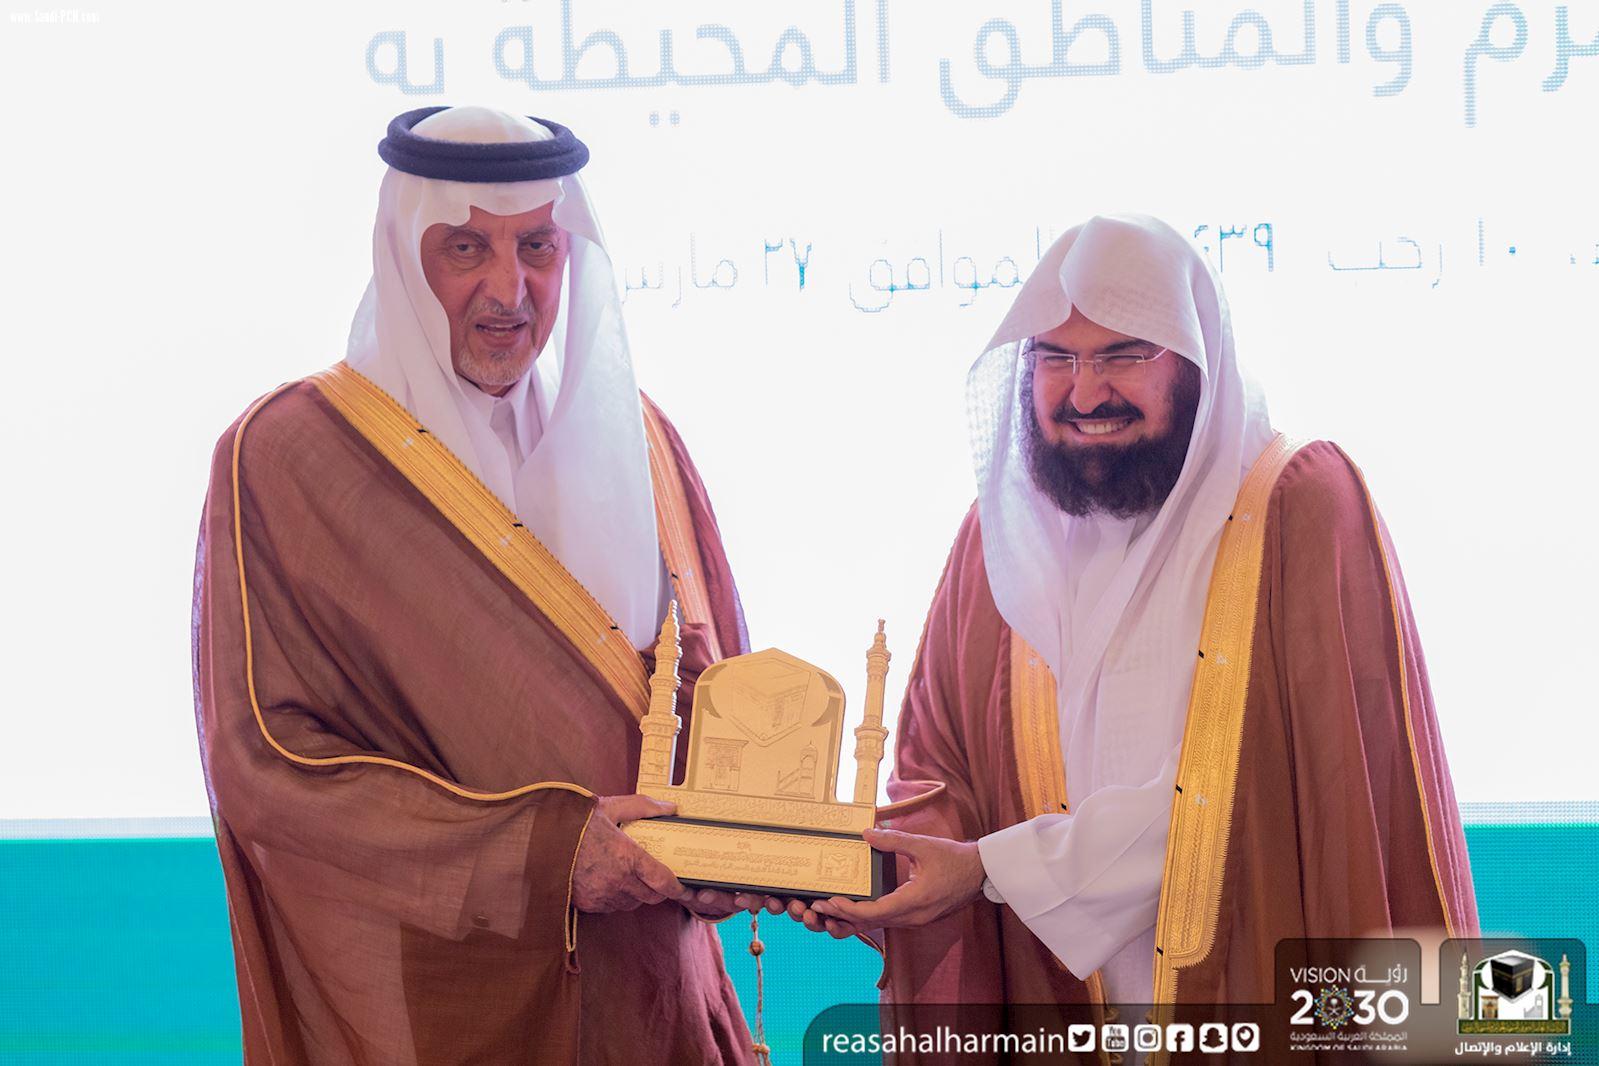 سمو أمير منطقة مكة المكرمة الأمير خالد الفيصل يرعى حفل افتتاح مشروع تأهيل بئر زمزم والمنطقة المحيطة به